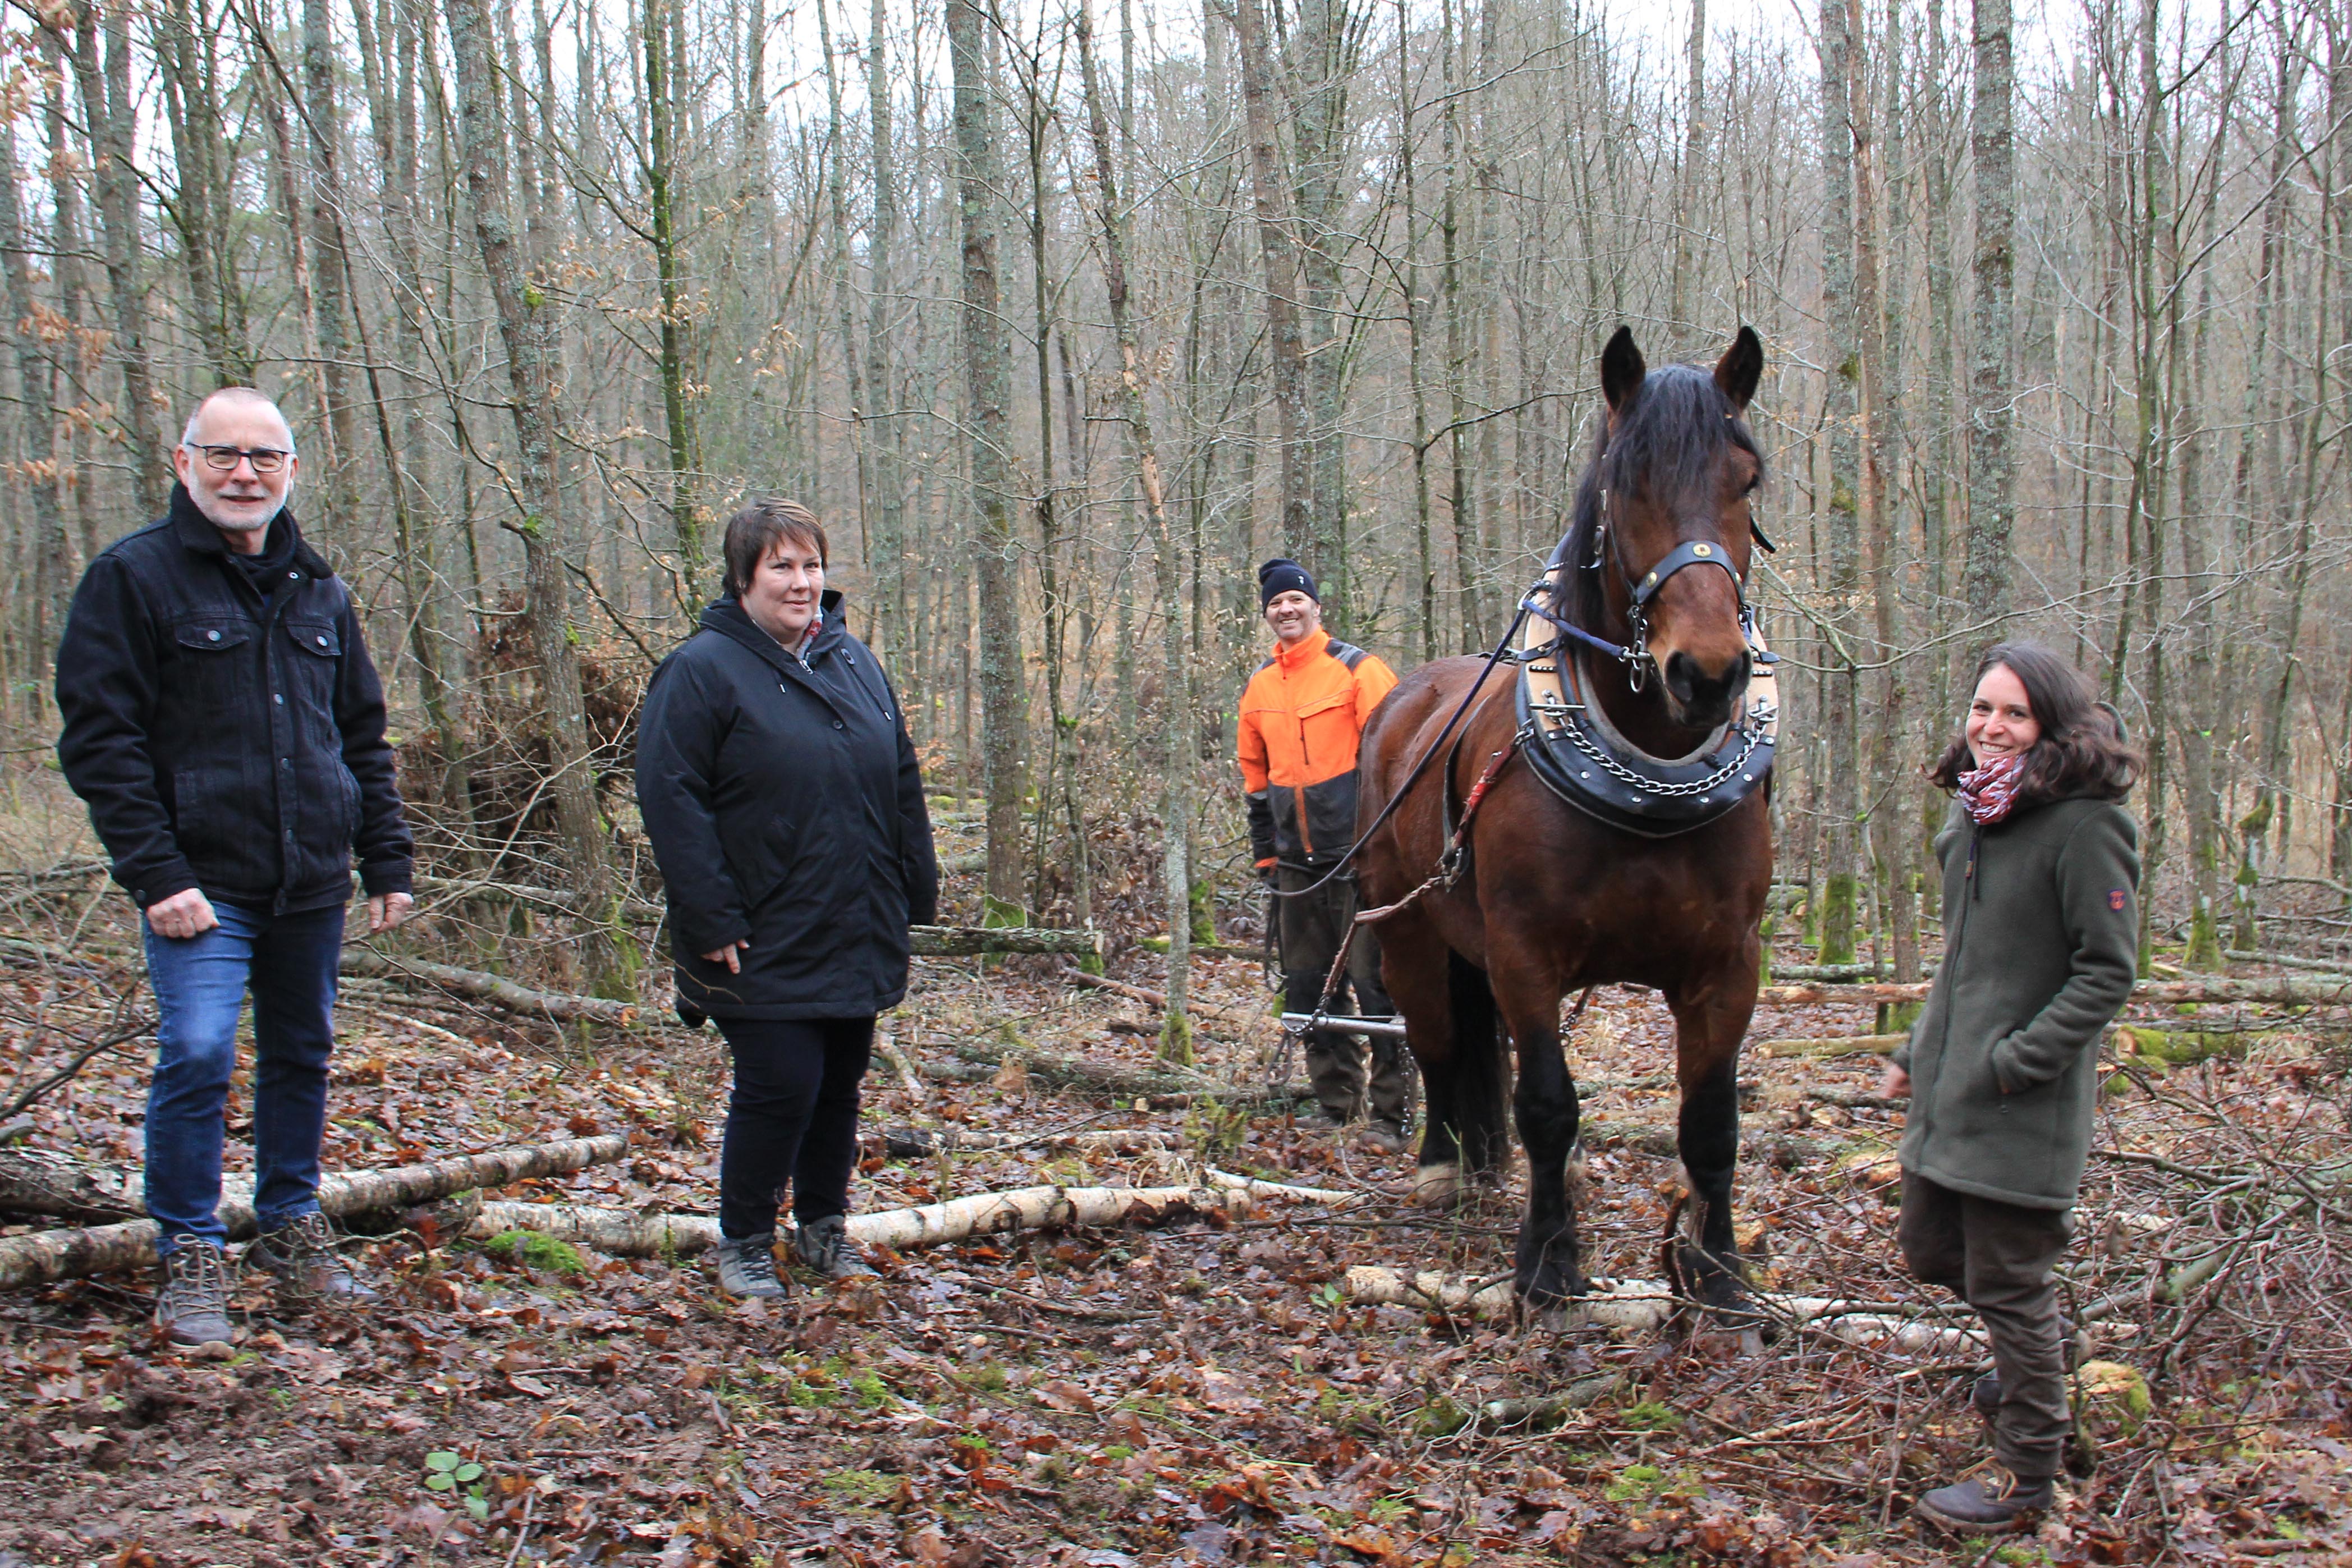  Rückepferd Max, sein Pferdeführer und 3 weitere Personen in enem jungen Waldstück 